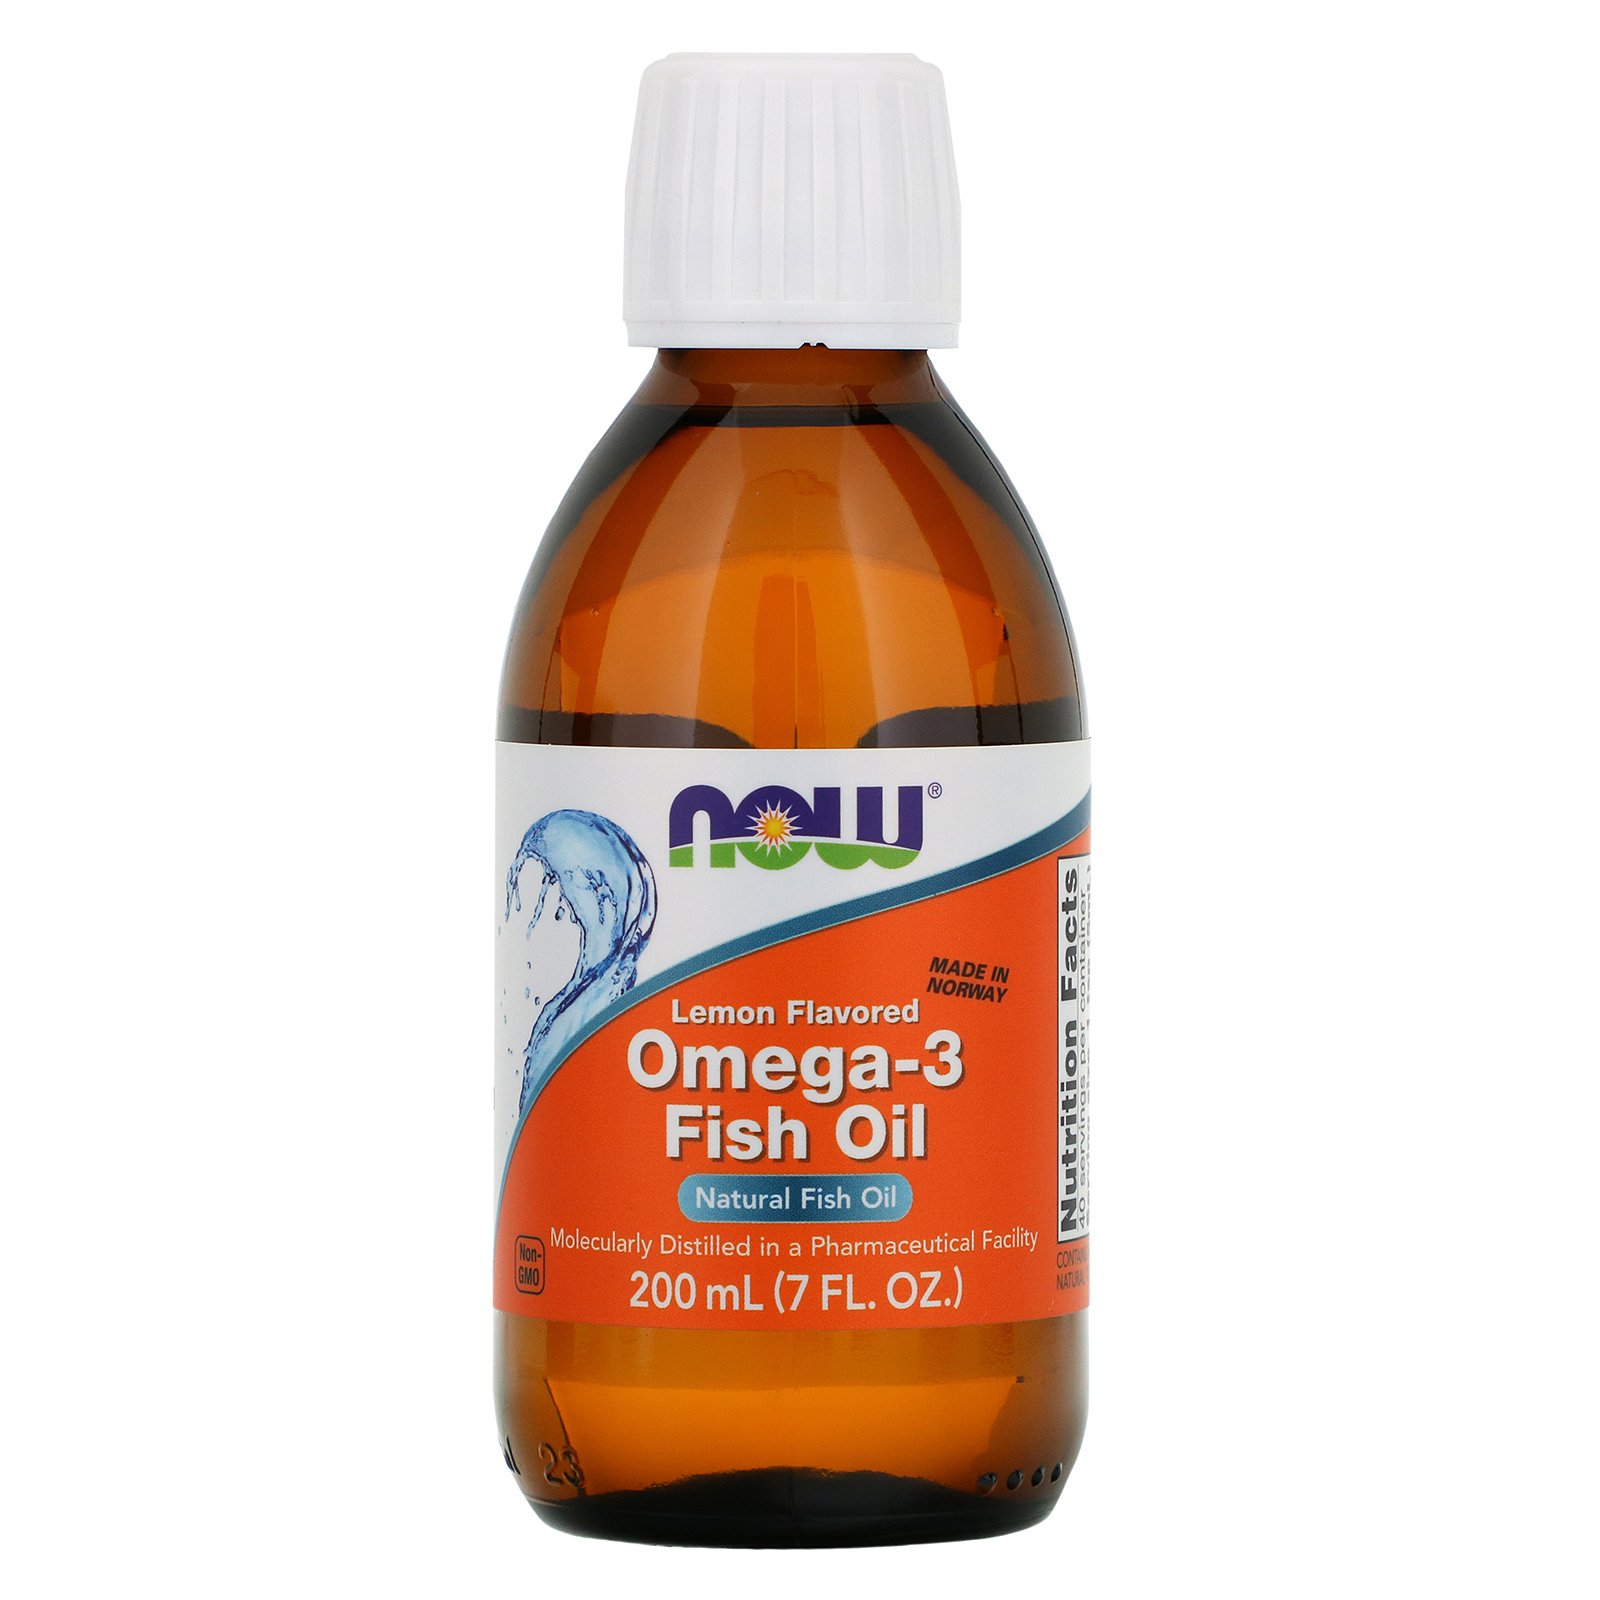 Omega-3 Oil, Омега-3 в Жидкой Форме с Лимонным Вкусом - 200 мл